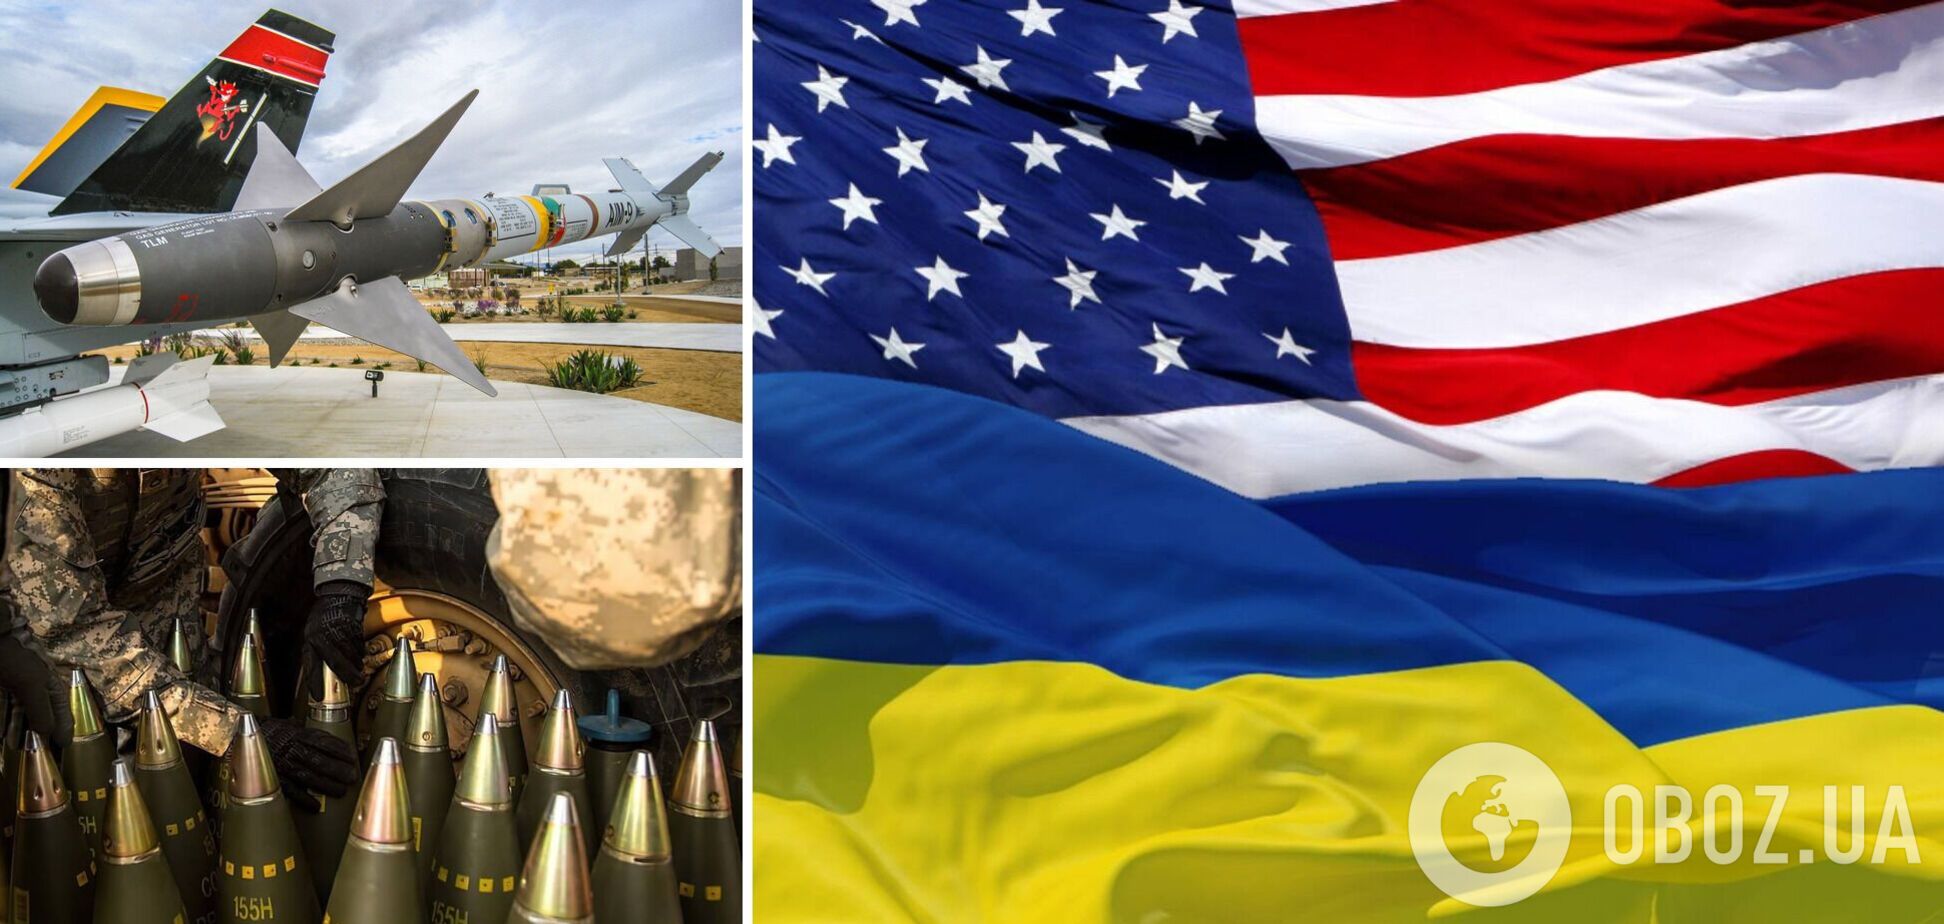 США в среду выделят Украине пакет помощи на $200 млн: что в него войдет 